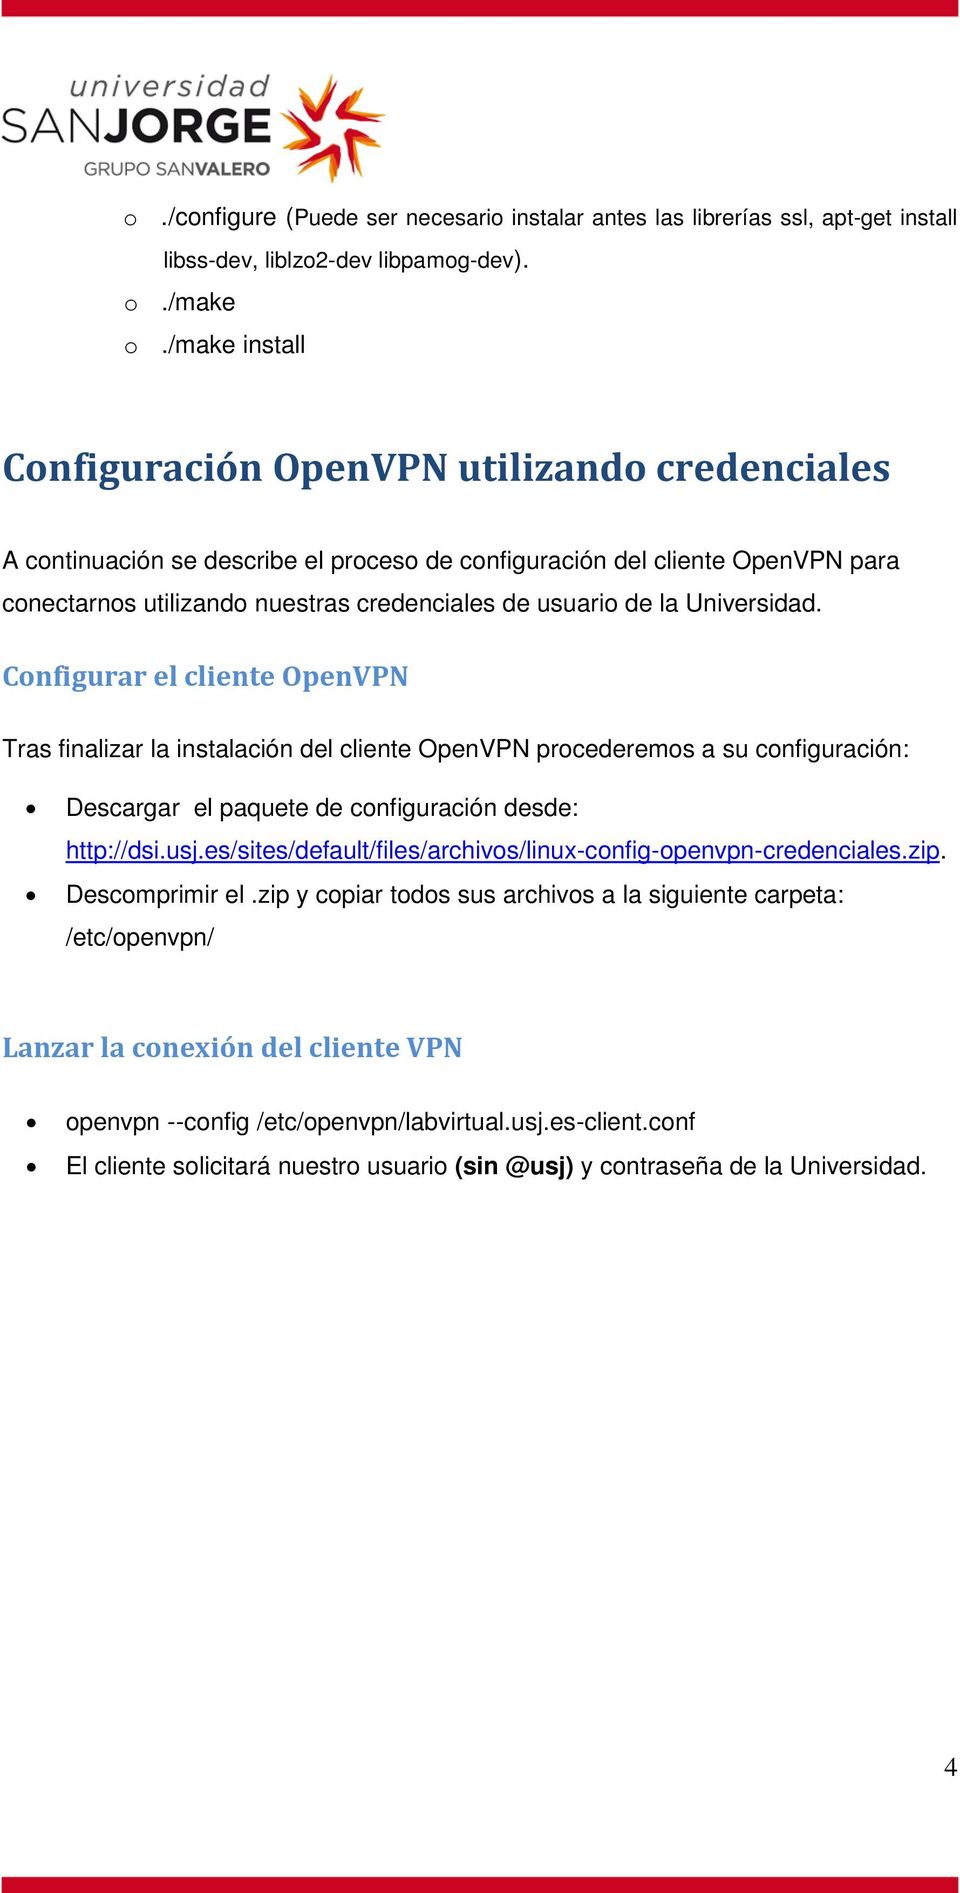 la Universidad. Configurar el cliente OpenVPN Tras finalizar la instalación del cliente OpenVPN procederemos a su configuración: Descargar el paquete de configuración desde: http://dsi.usj.